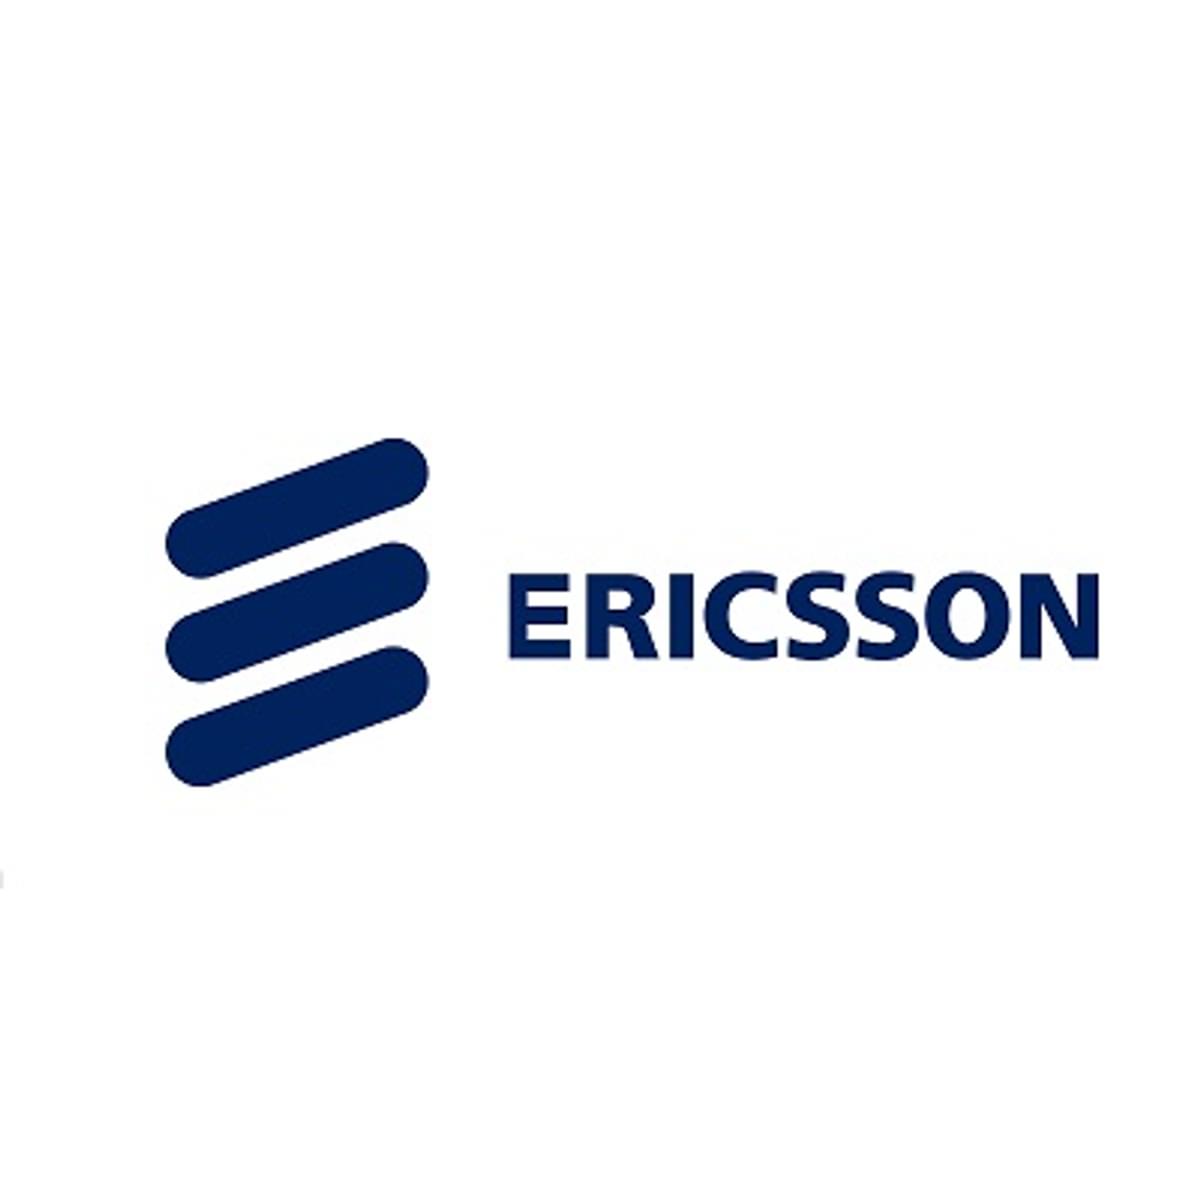 Ericsson ziet omzet in het tweede kwartaal dalen image